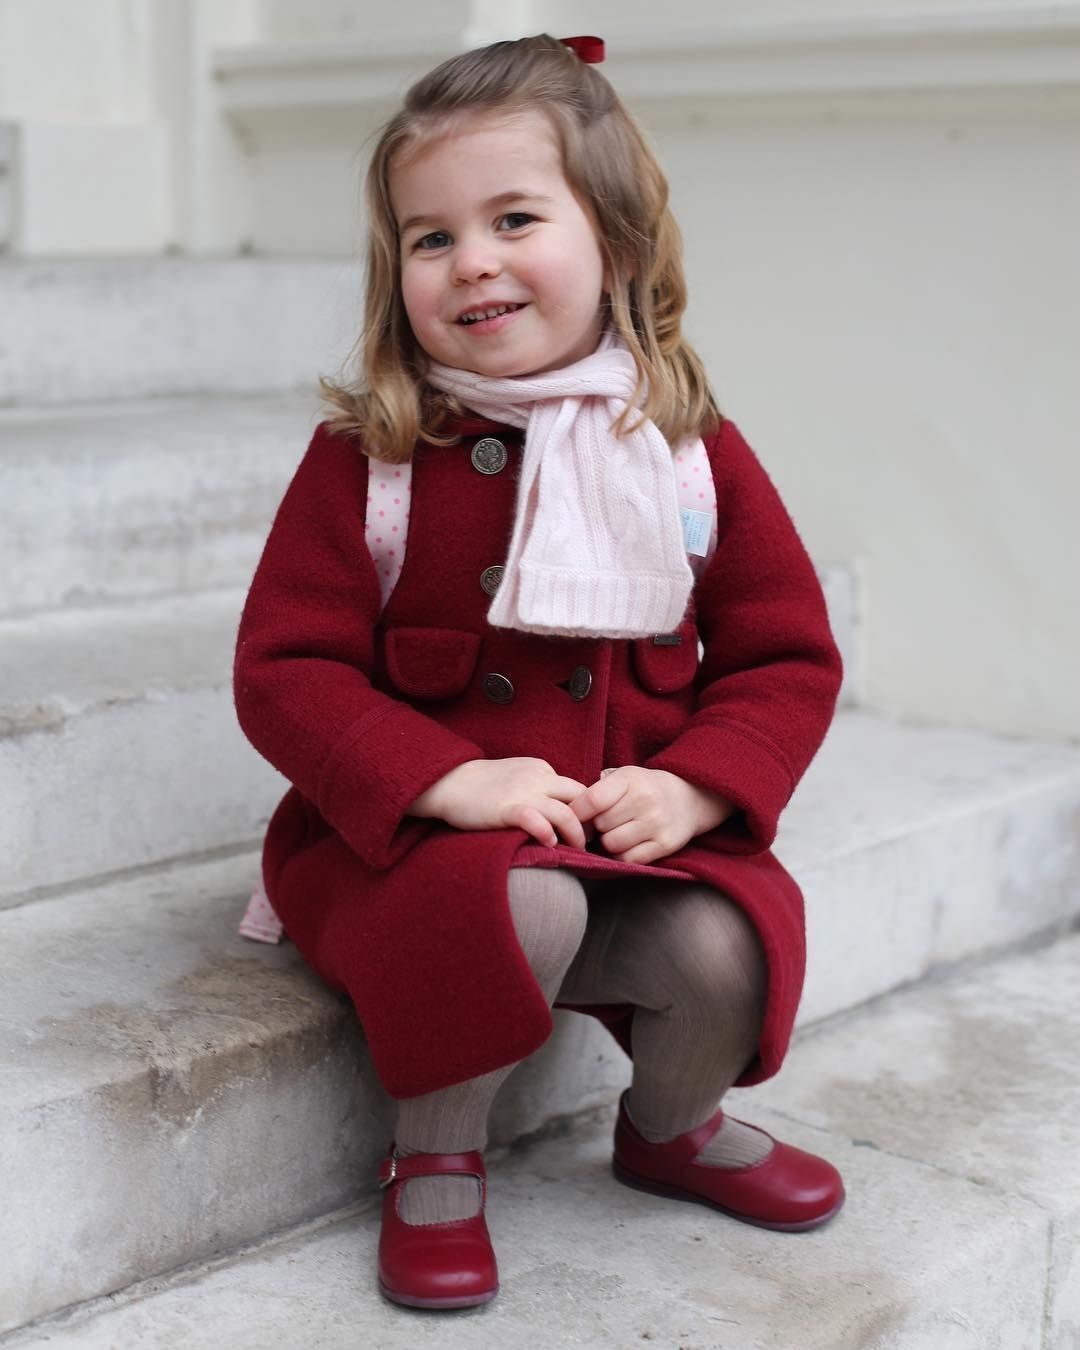 10 милих фото королівської сім'ї, які зробила Кейт Міддлтон: від них віє теплом і ніжністю